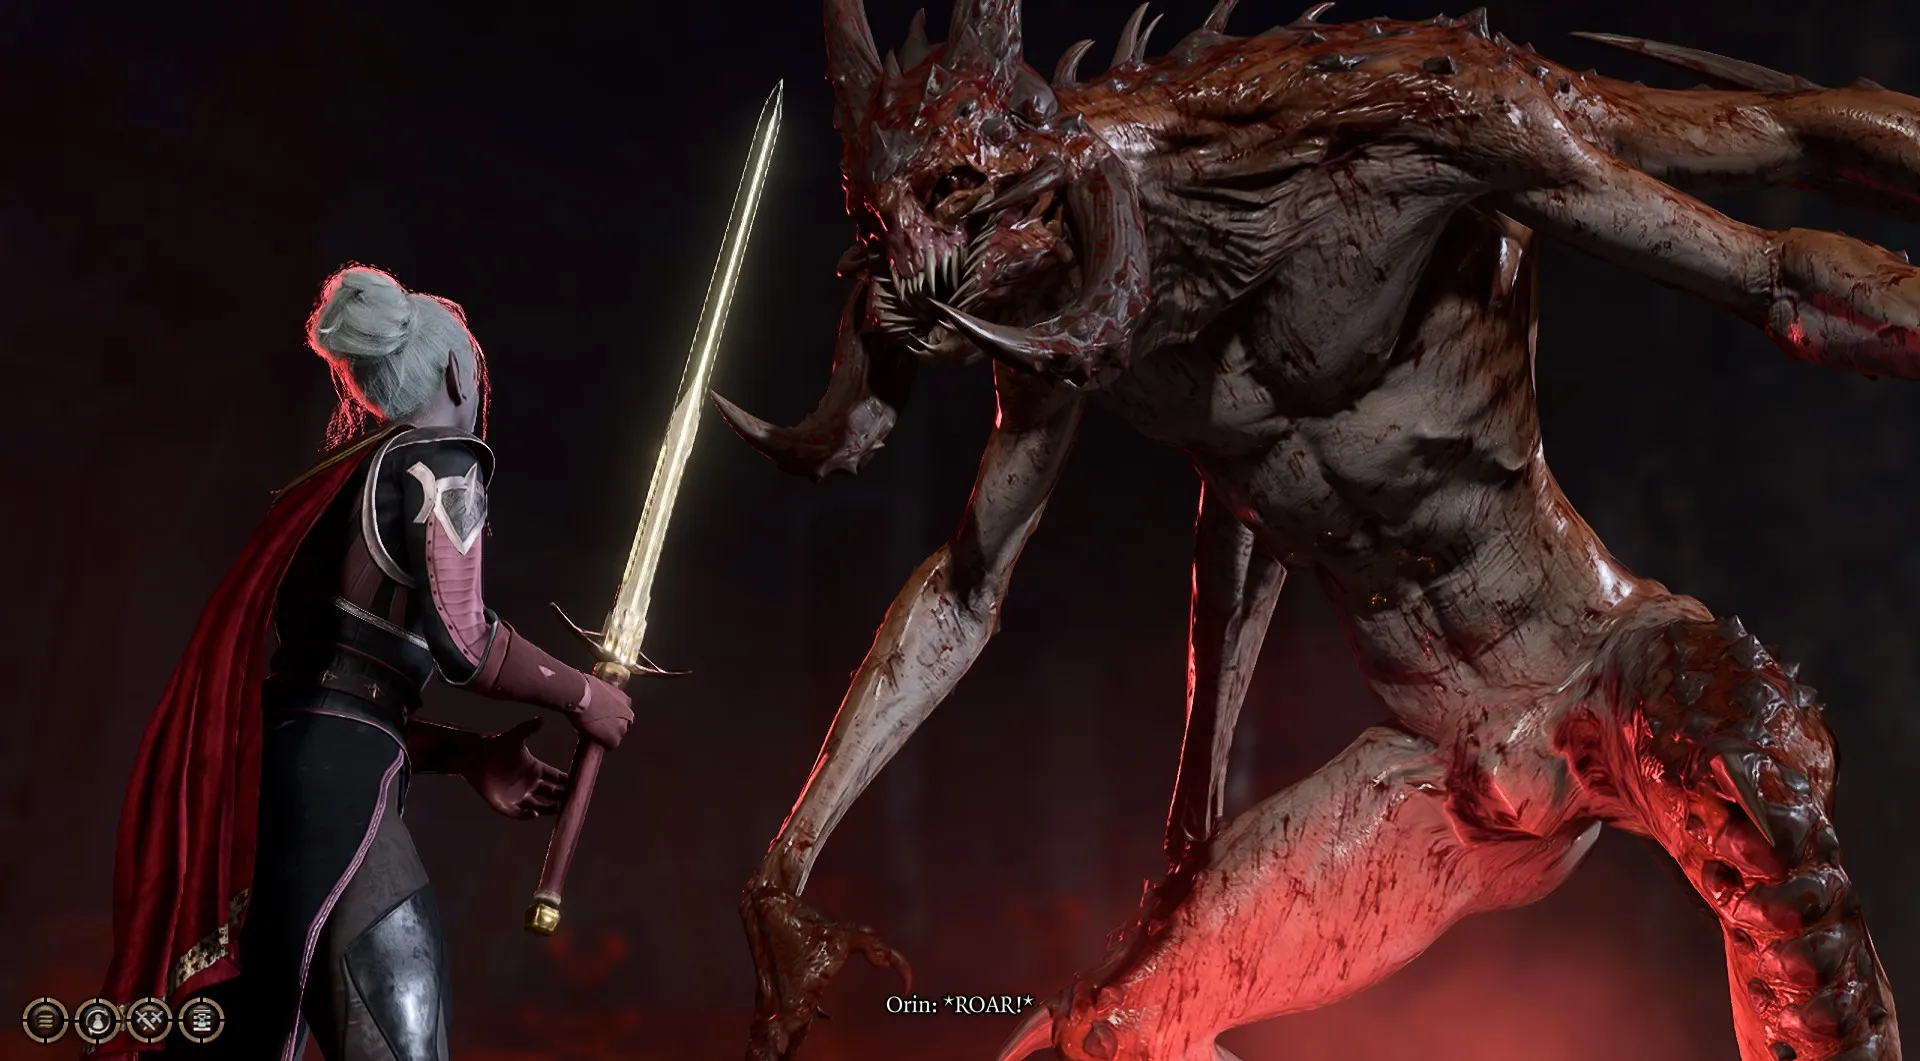 Un sorcier drow Dark Urge racheté fait face à Slayer Orin dans un duel à mort dans Baldur’s Gate 3